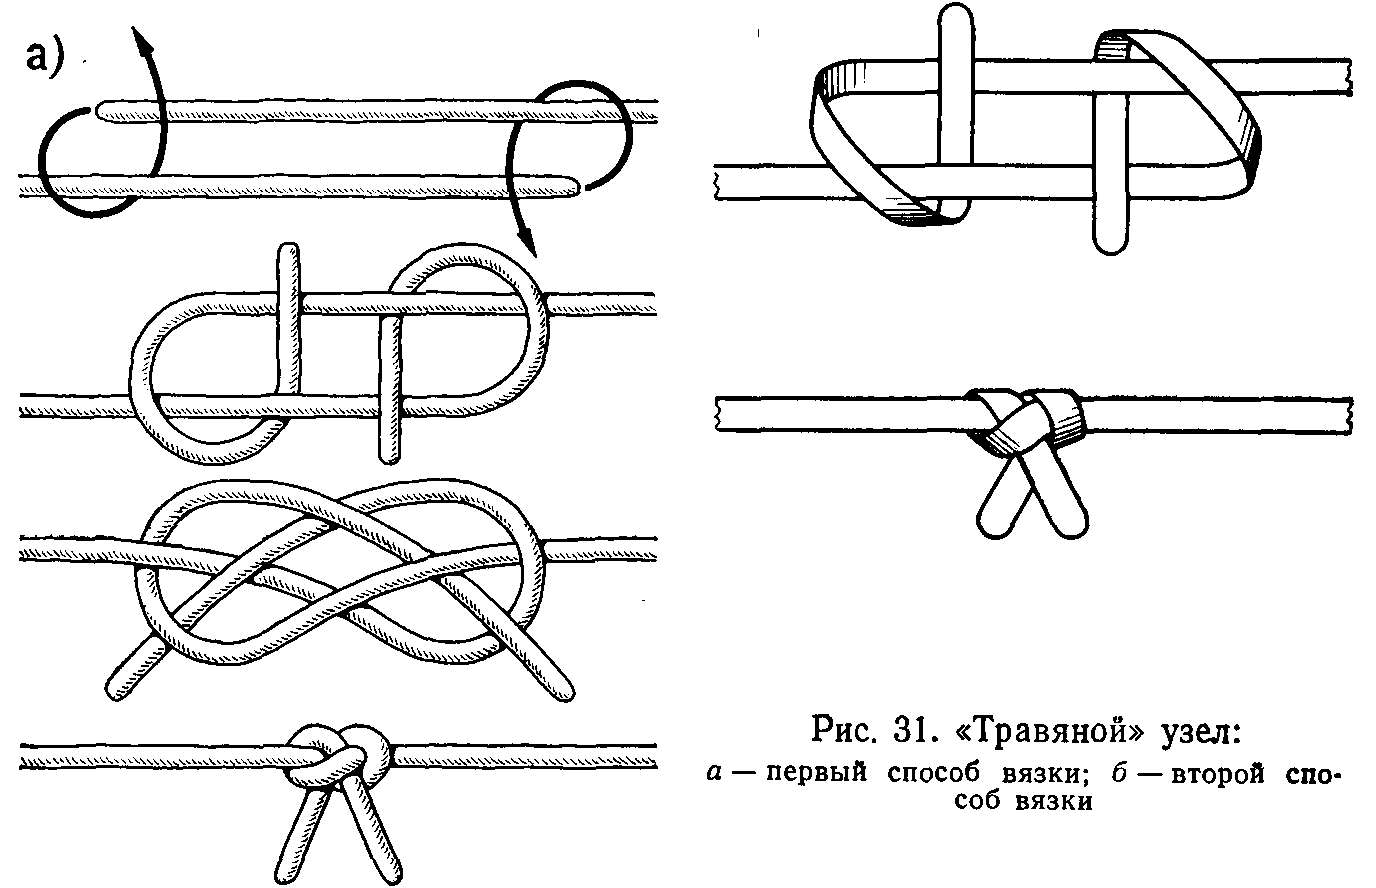 Схема простого морского узла